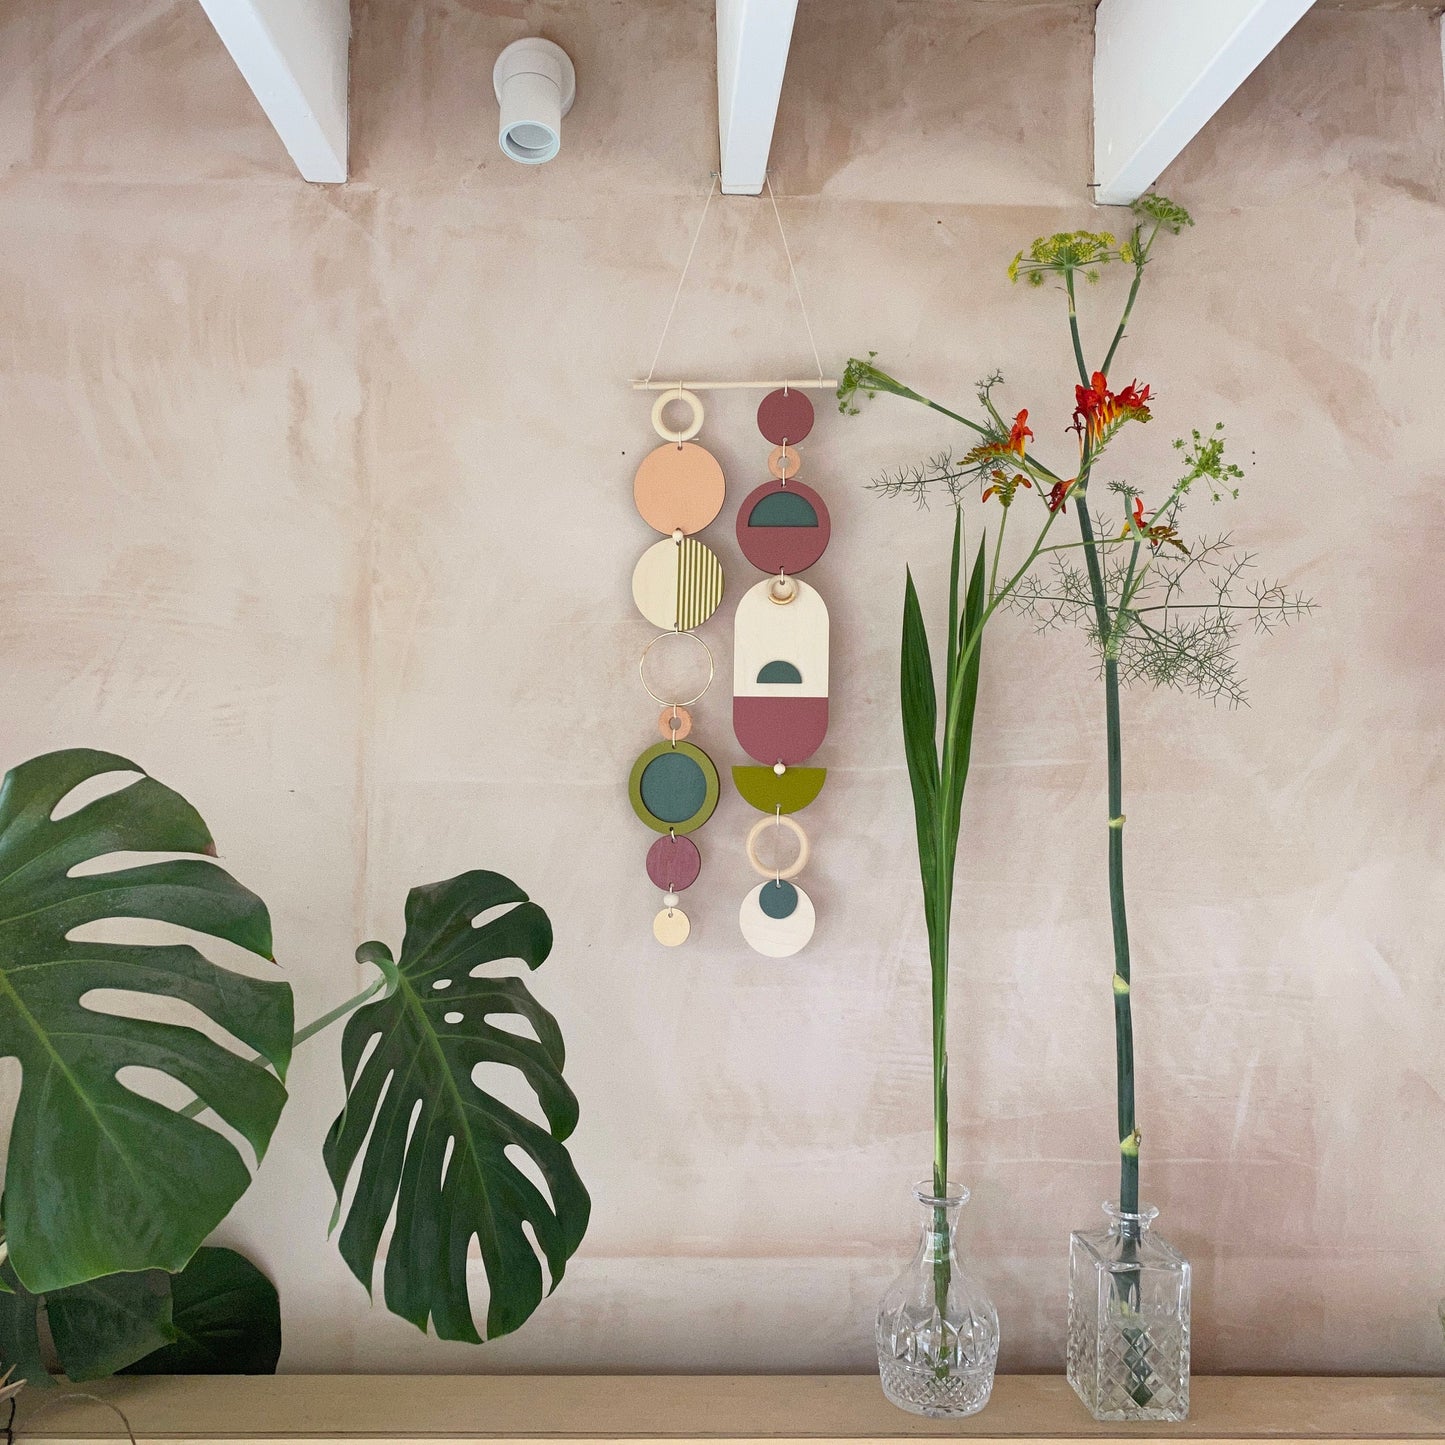 Bold Wall Art - Different Artwork - Minimalist Home Decor - Geometric Art